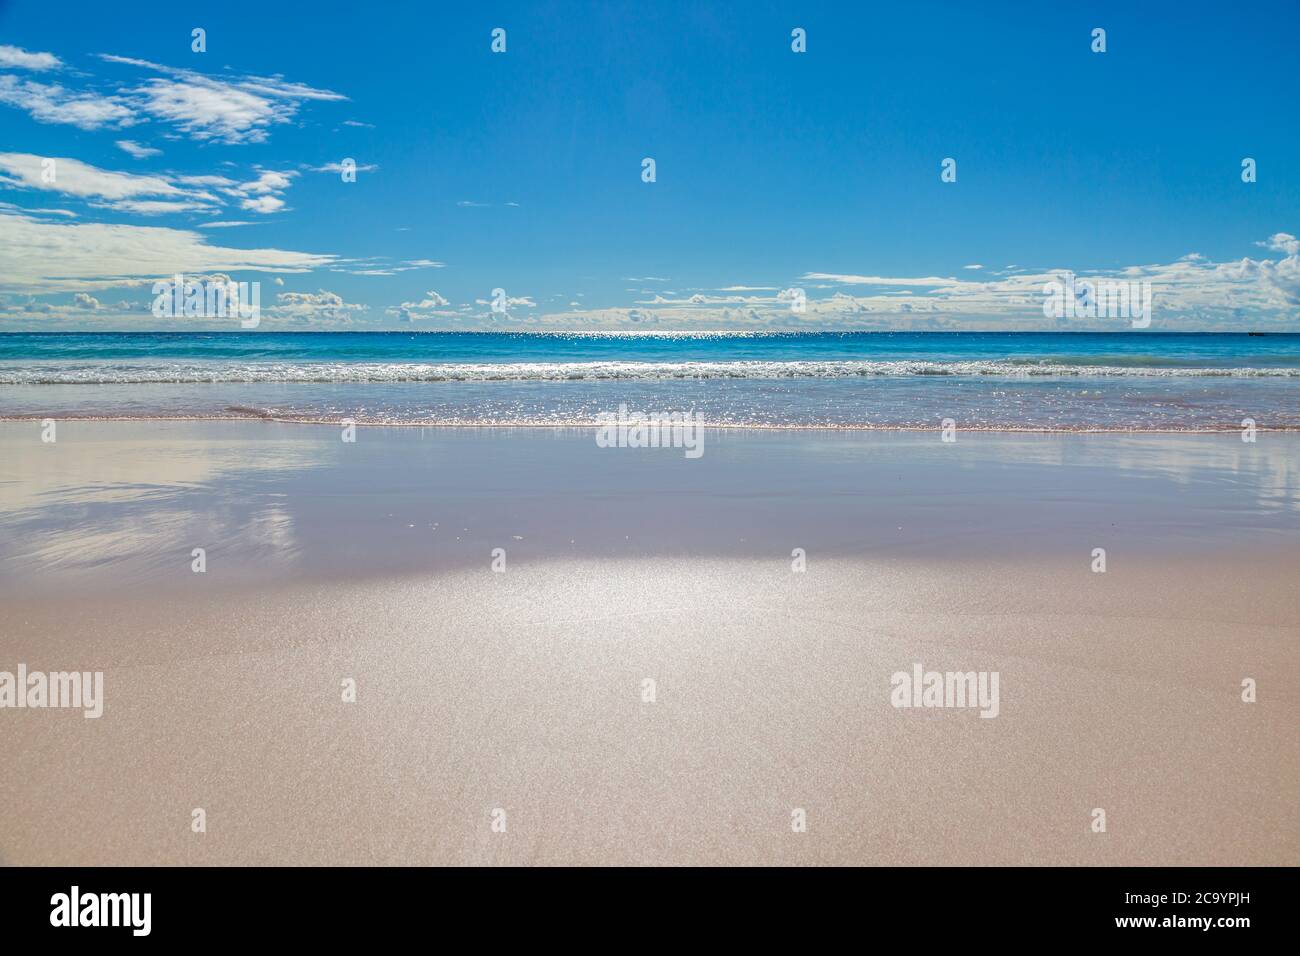 La magnifique plage de sable de Horseshoe Bay, sur l'île des Bermudes Banque D'Images